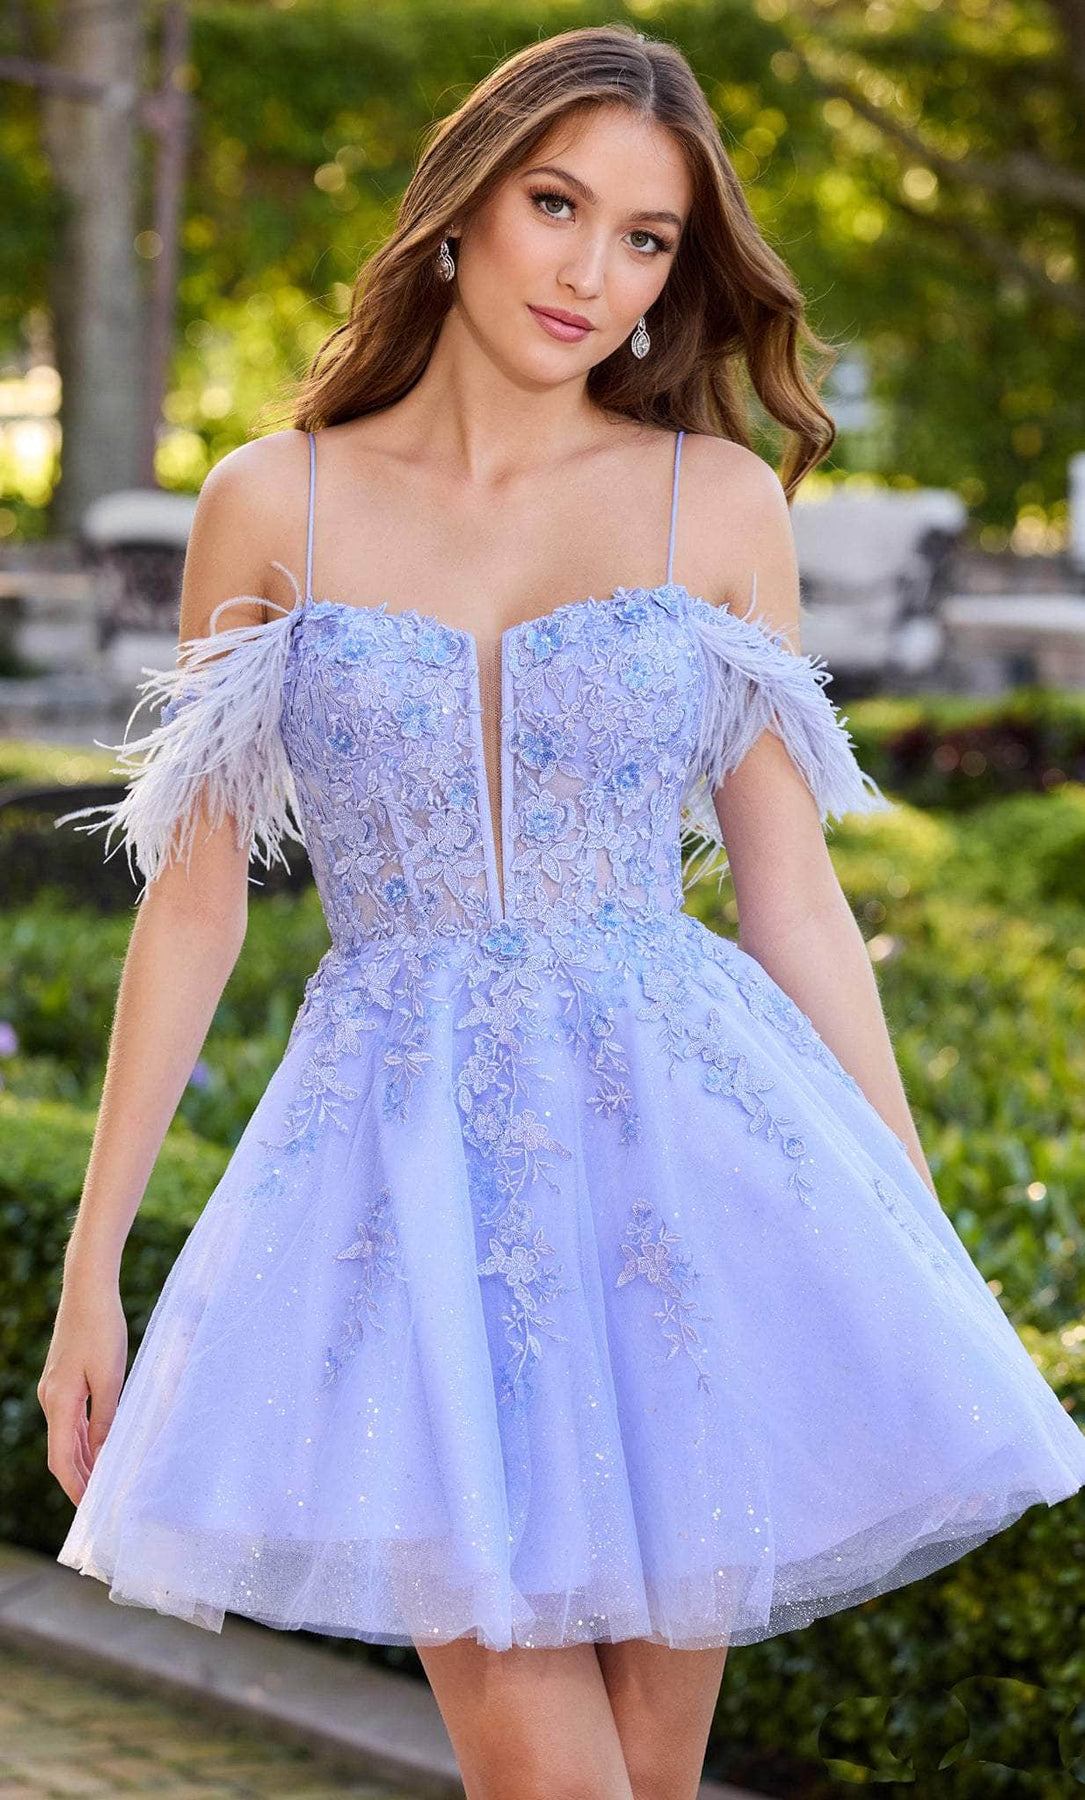 Amarra 88849 - Lace Ornate Corset Prom Dress – ADASA